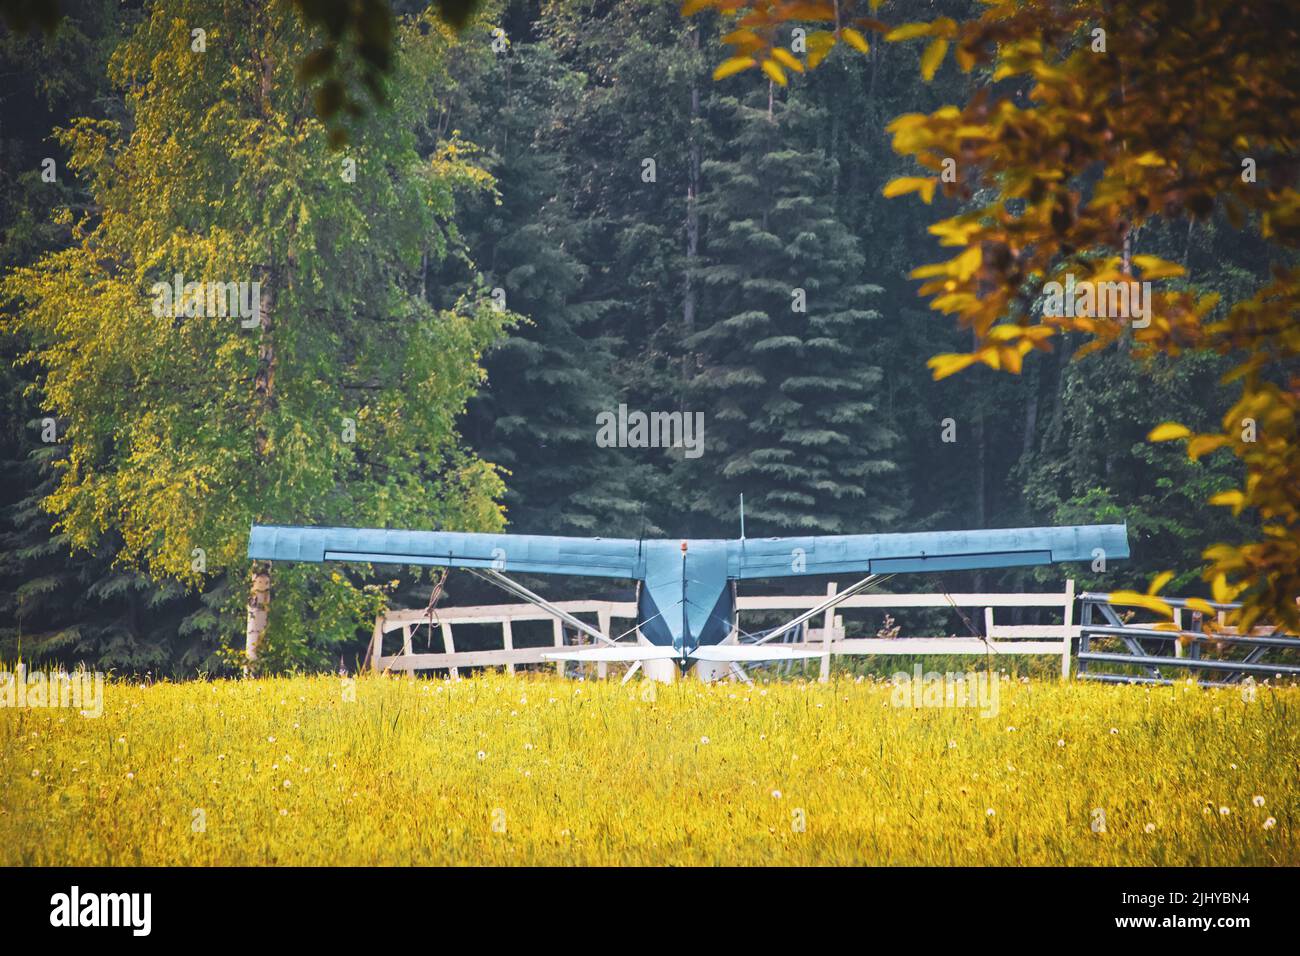 Petit avion bleu stationné dans un champ près d'une clôture en bois blanc avec un fond flou de forêt à feuilles persistantes Banque D'Images